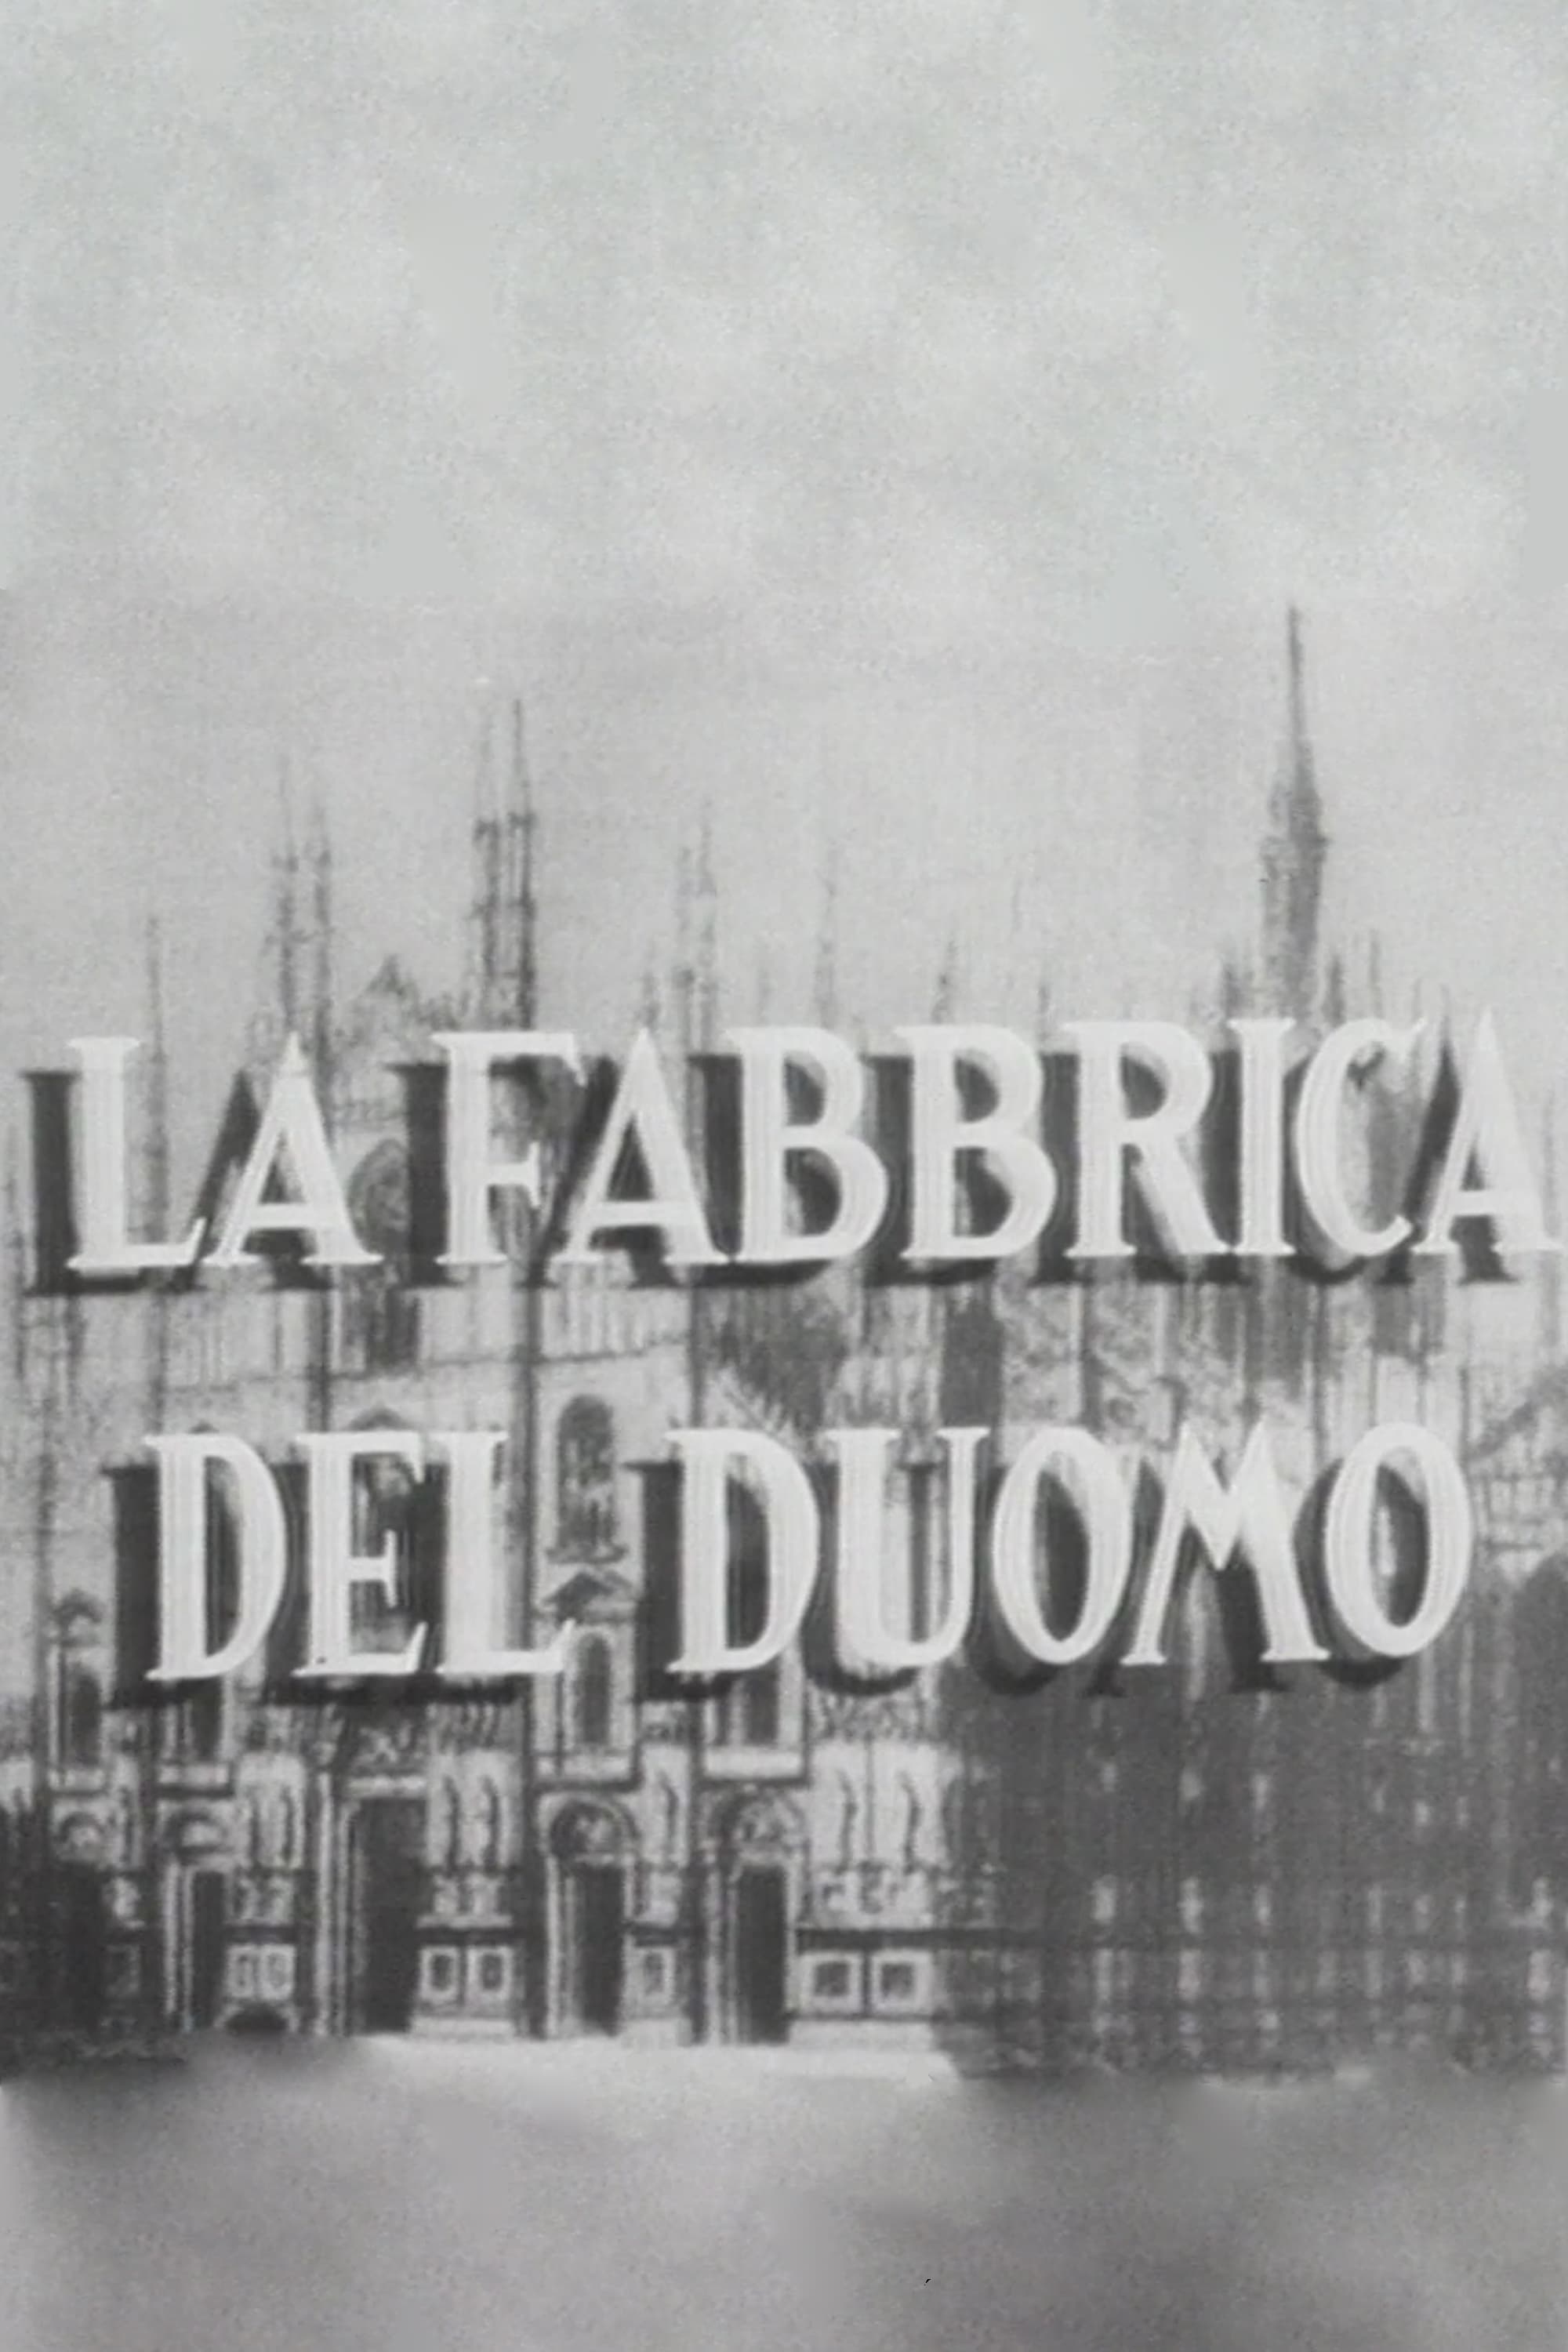 La fabbrica del duomo (1949)